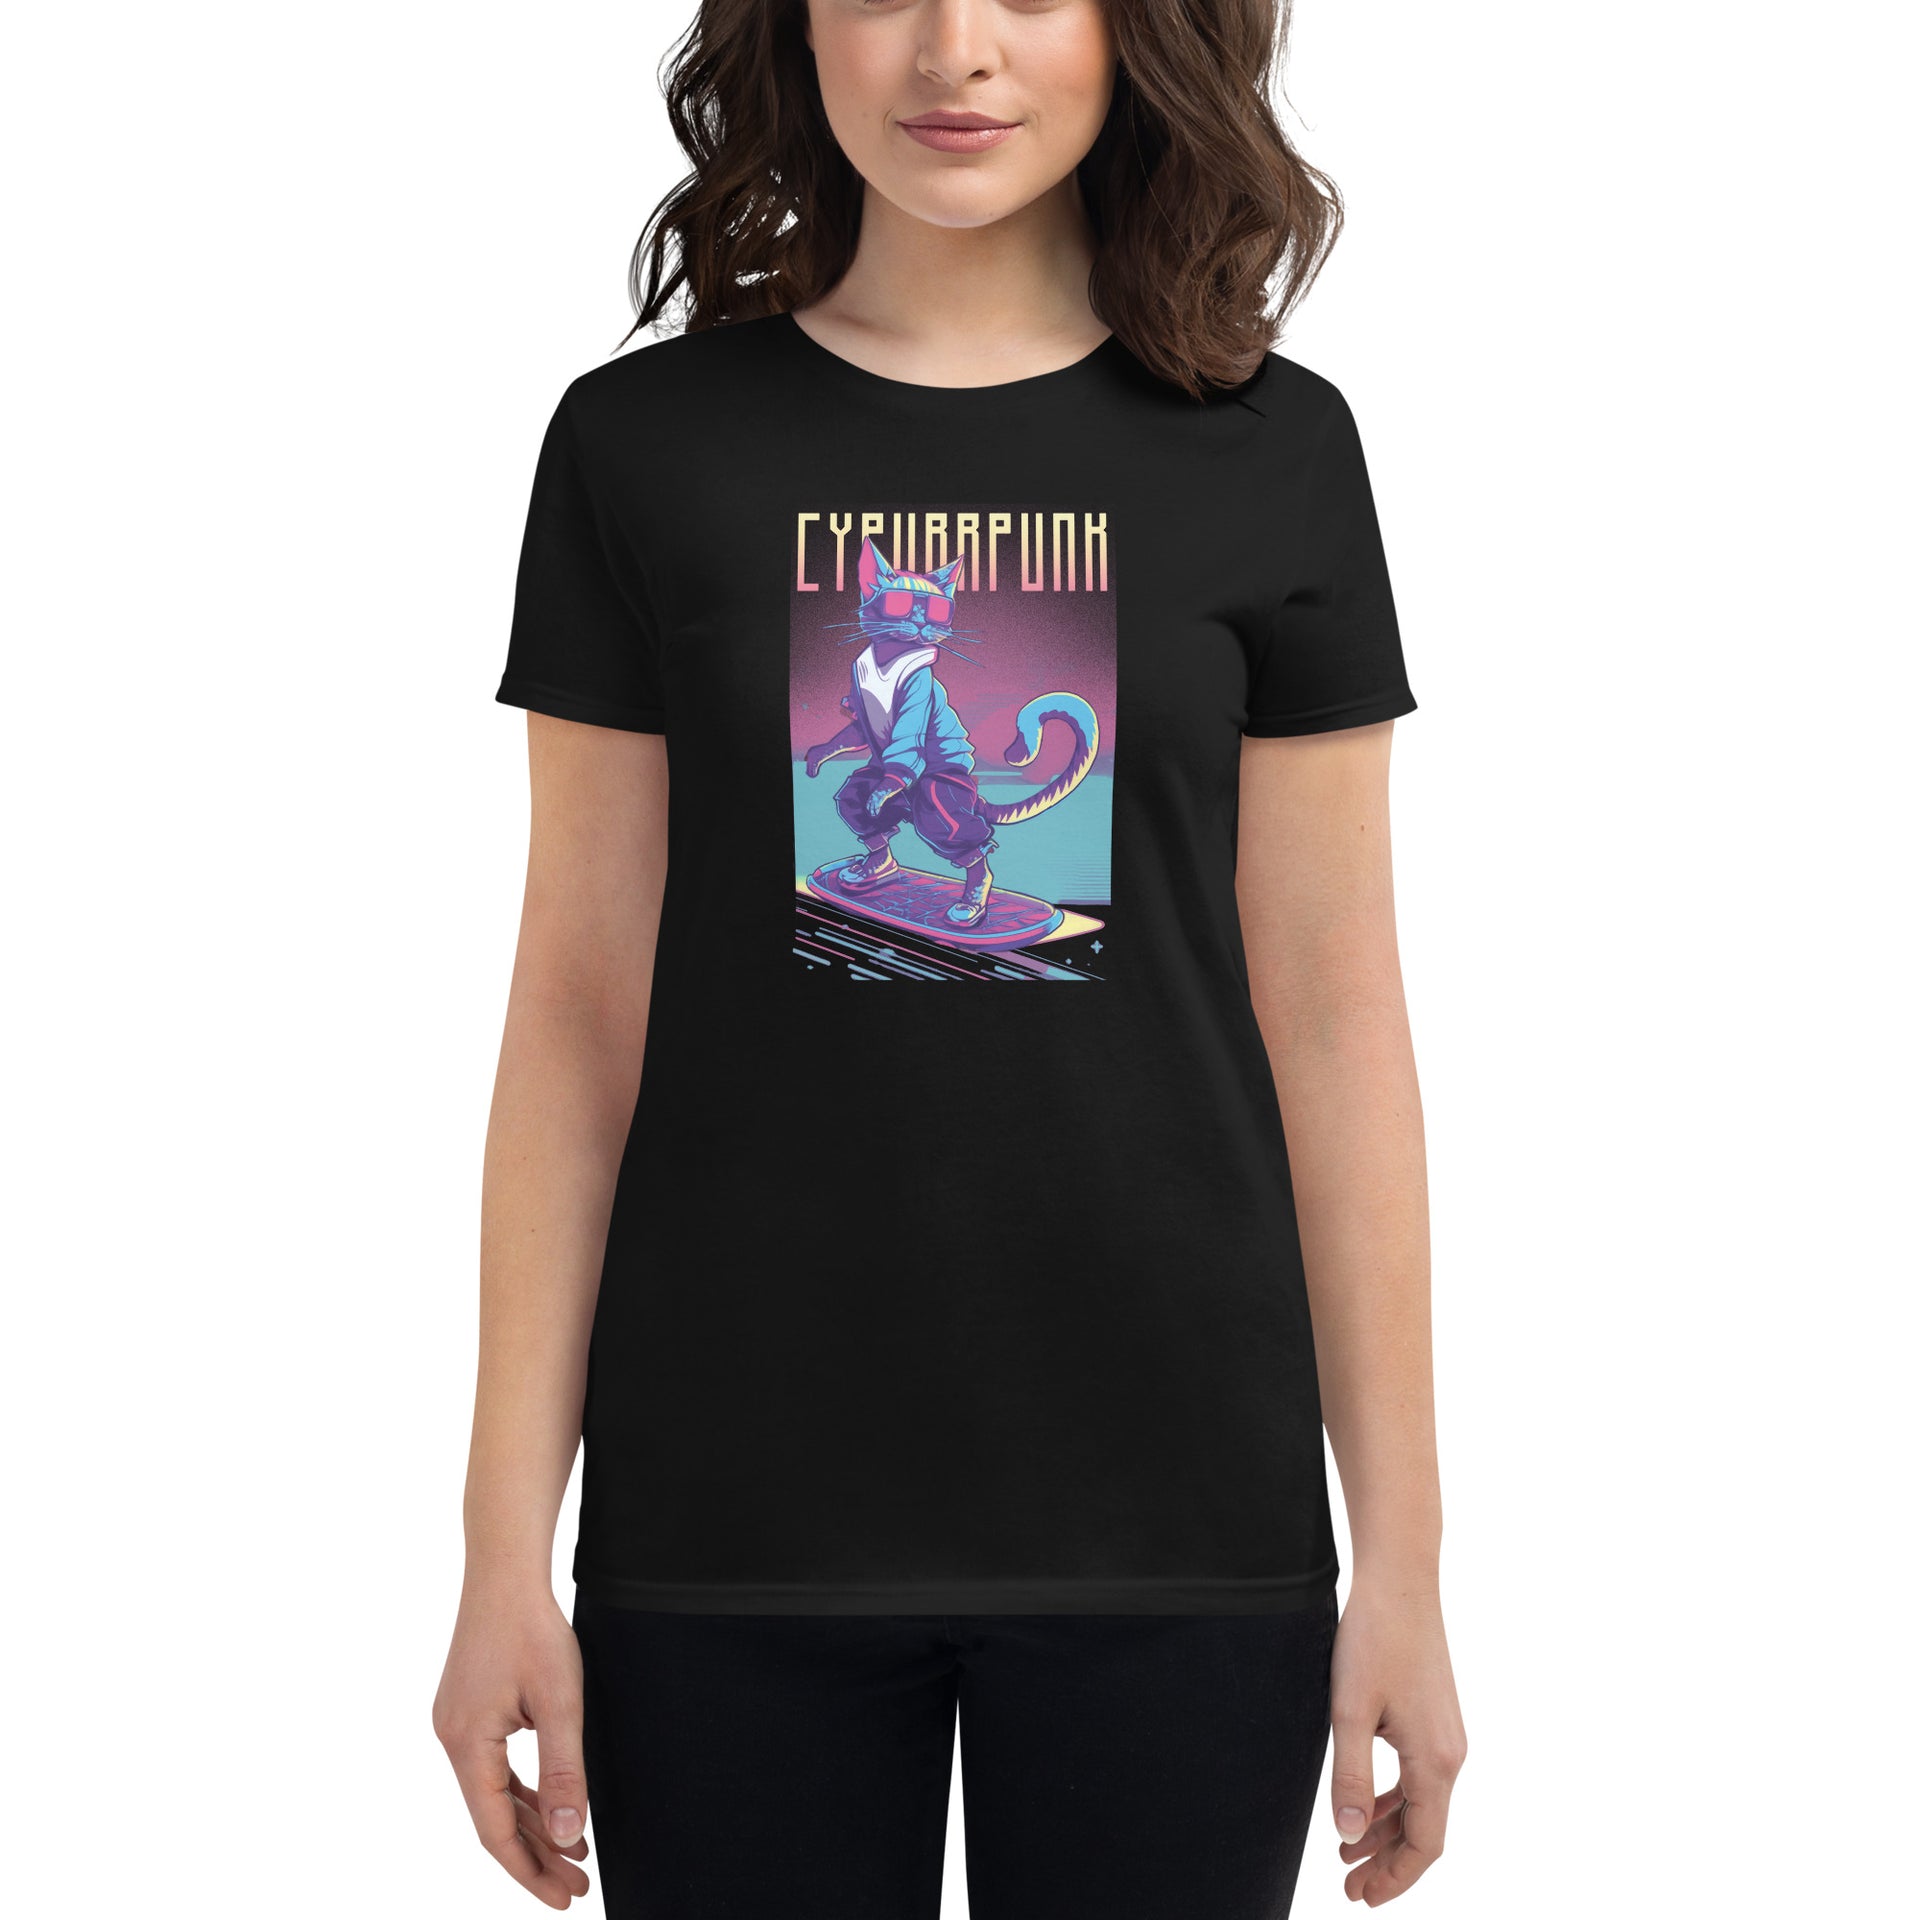 Cypurrpunk Women's T-Shirt